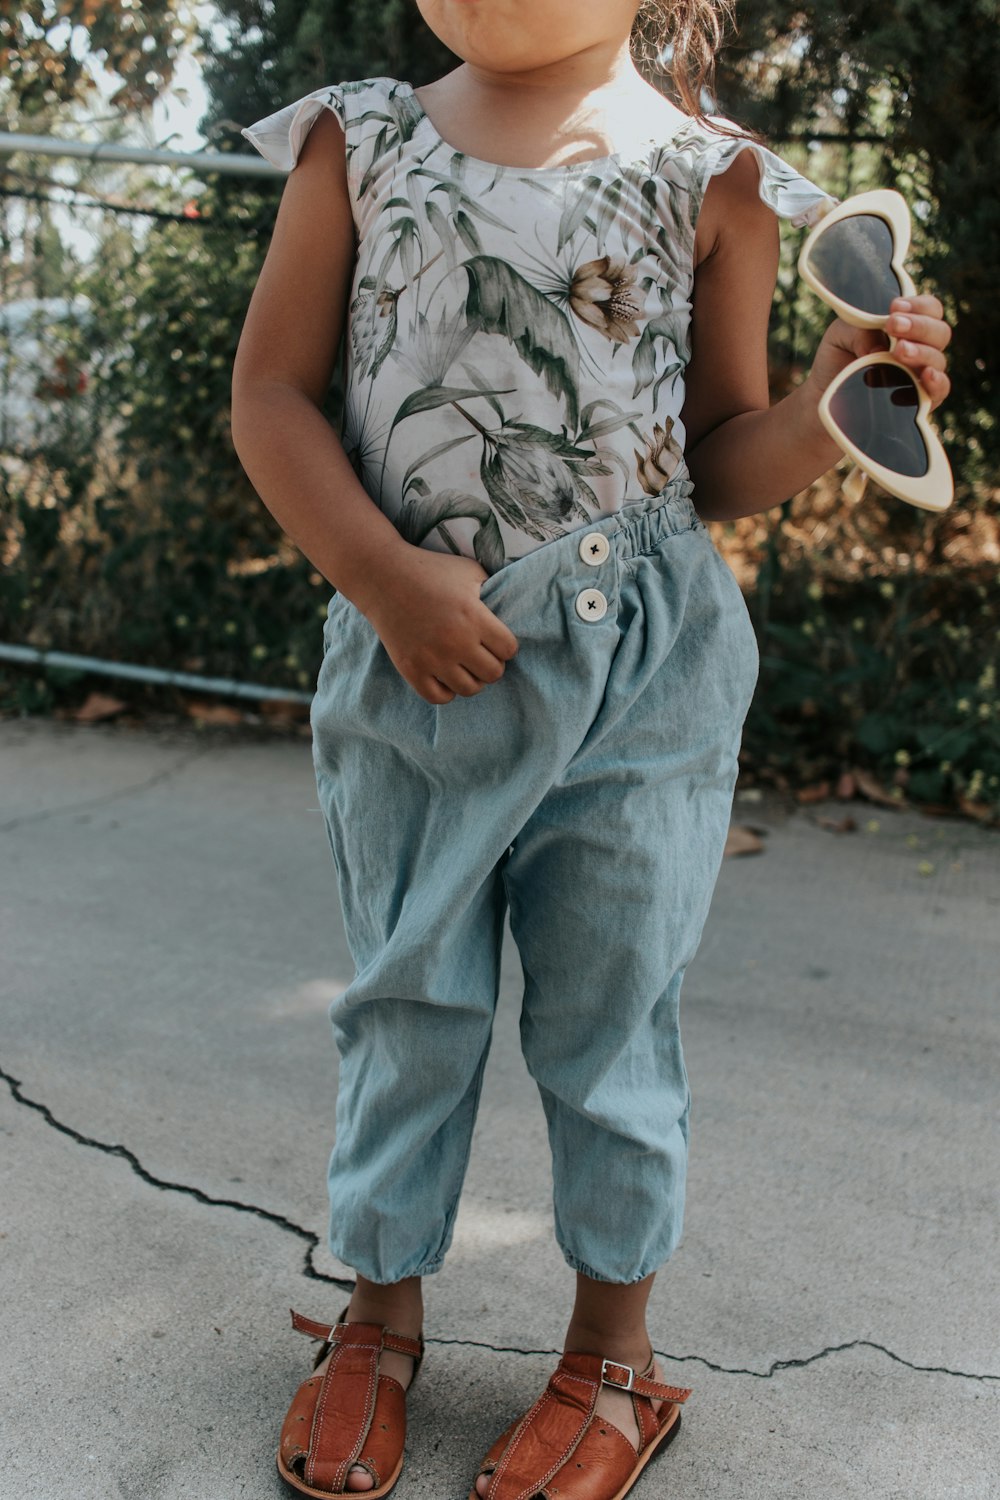 girl standing holding sunglasses